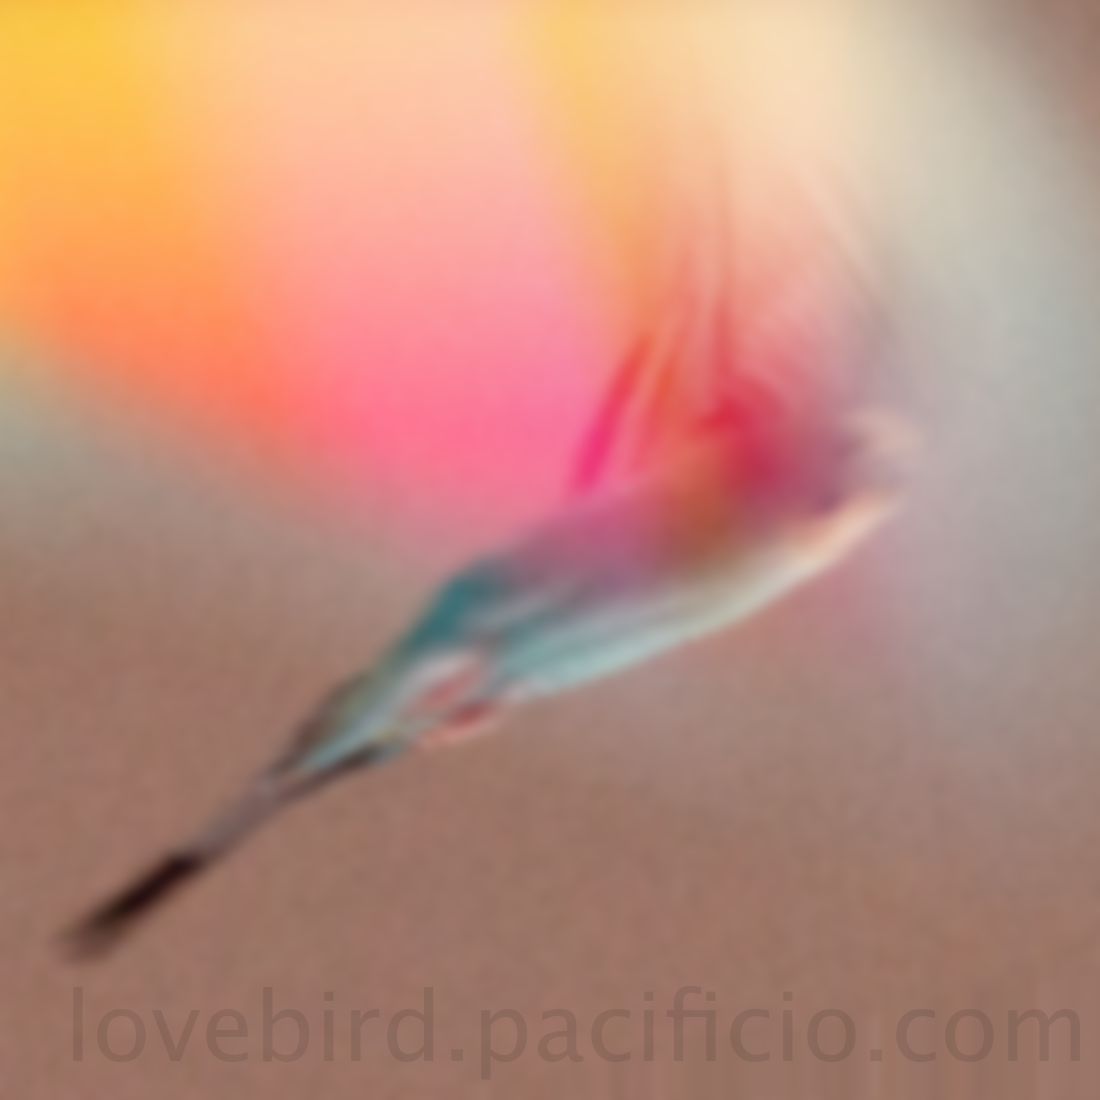 loveBird logo